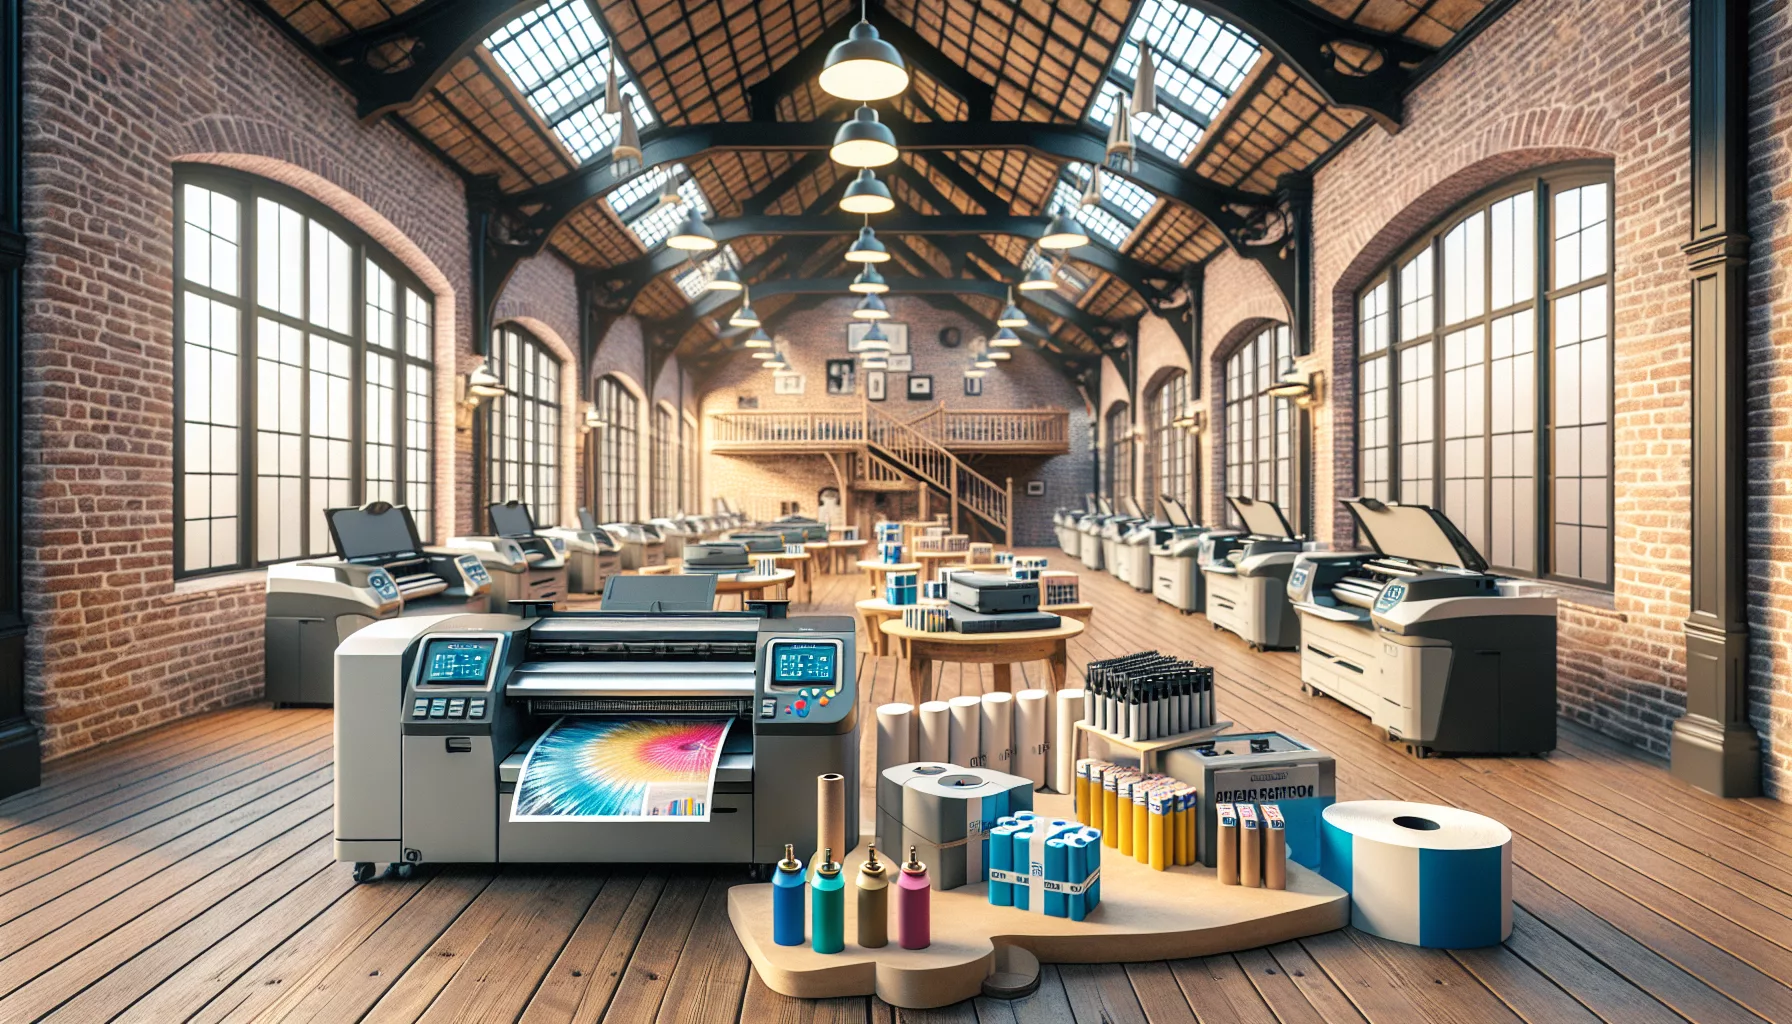 louez une imprimante professionnelle en belgique avec un contrat de location d'imprimante adapté à vos besoins. bénéficiez d'une location d'imprimante professionnelle de qualité pour votre entreprise en belgique.